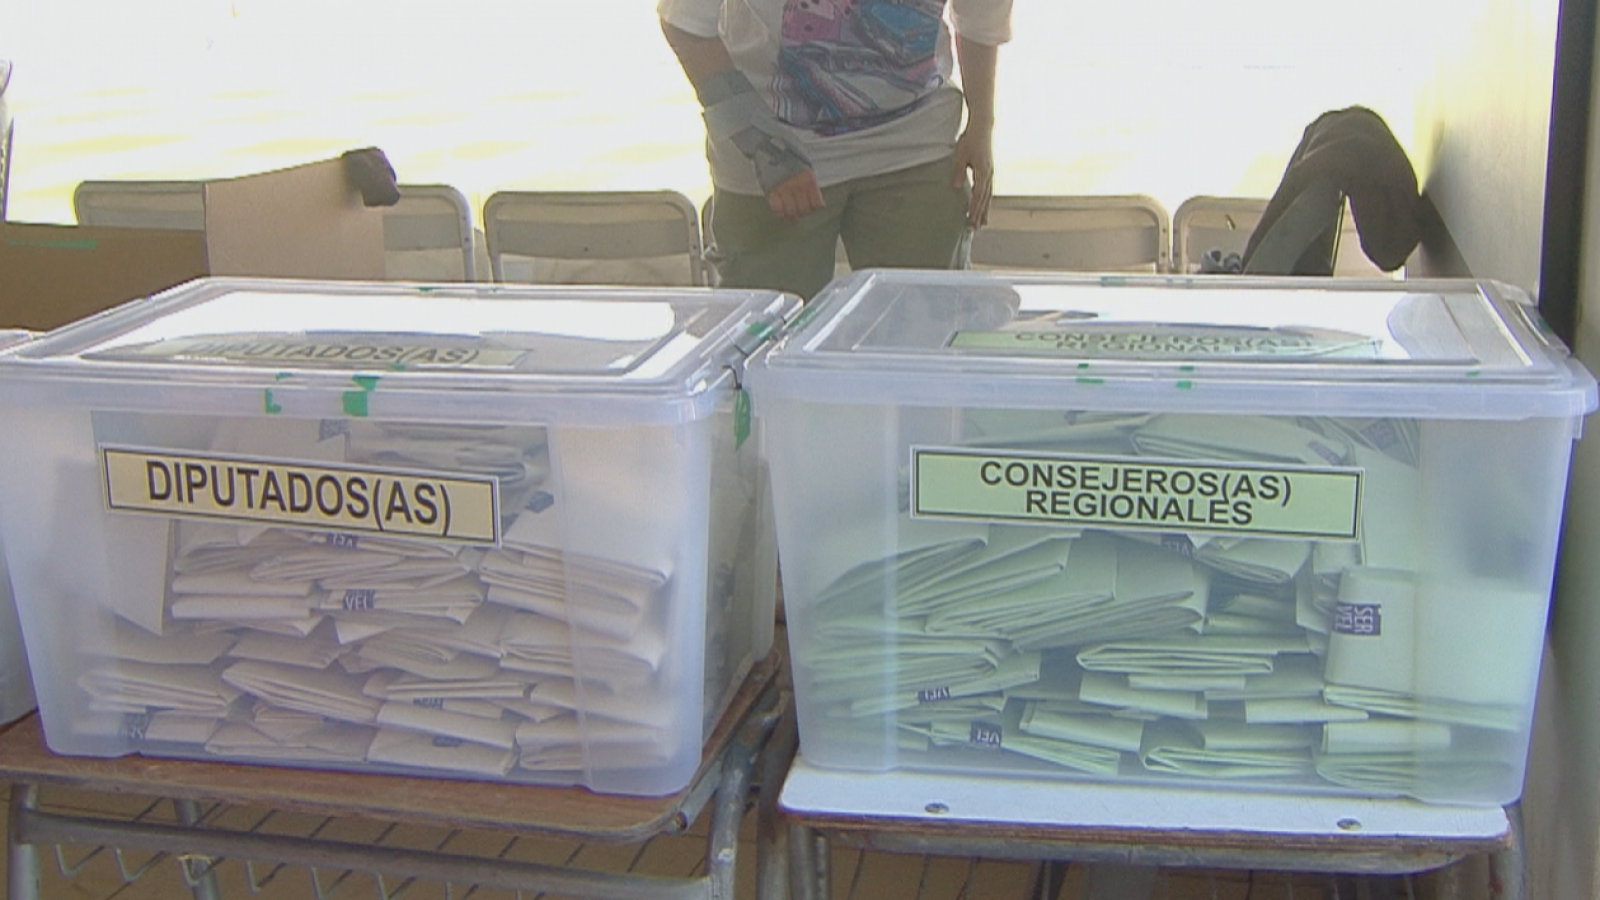 Insólito: informan de urnas donde no caben más votos y no hay cajas de reemplazo